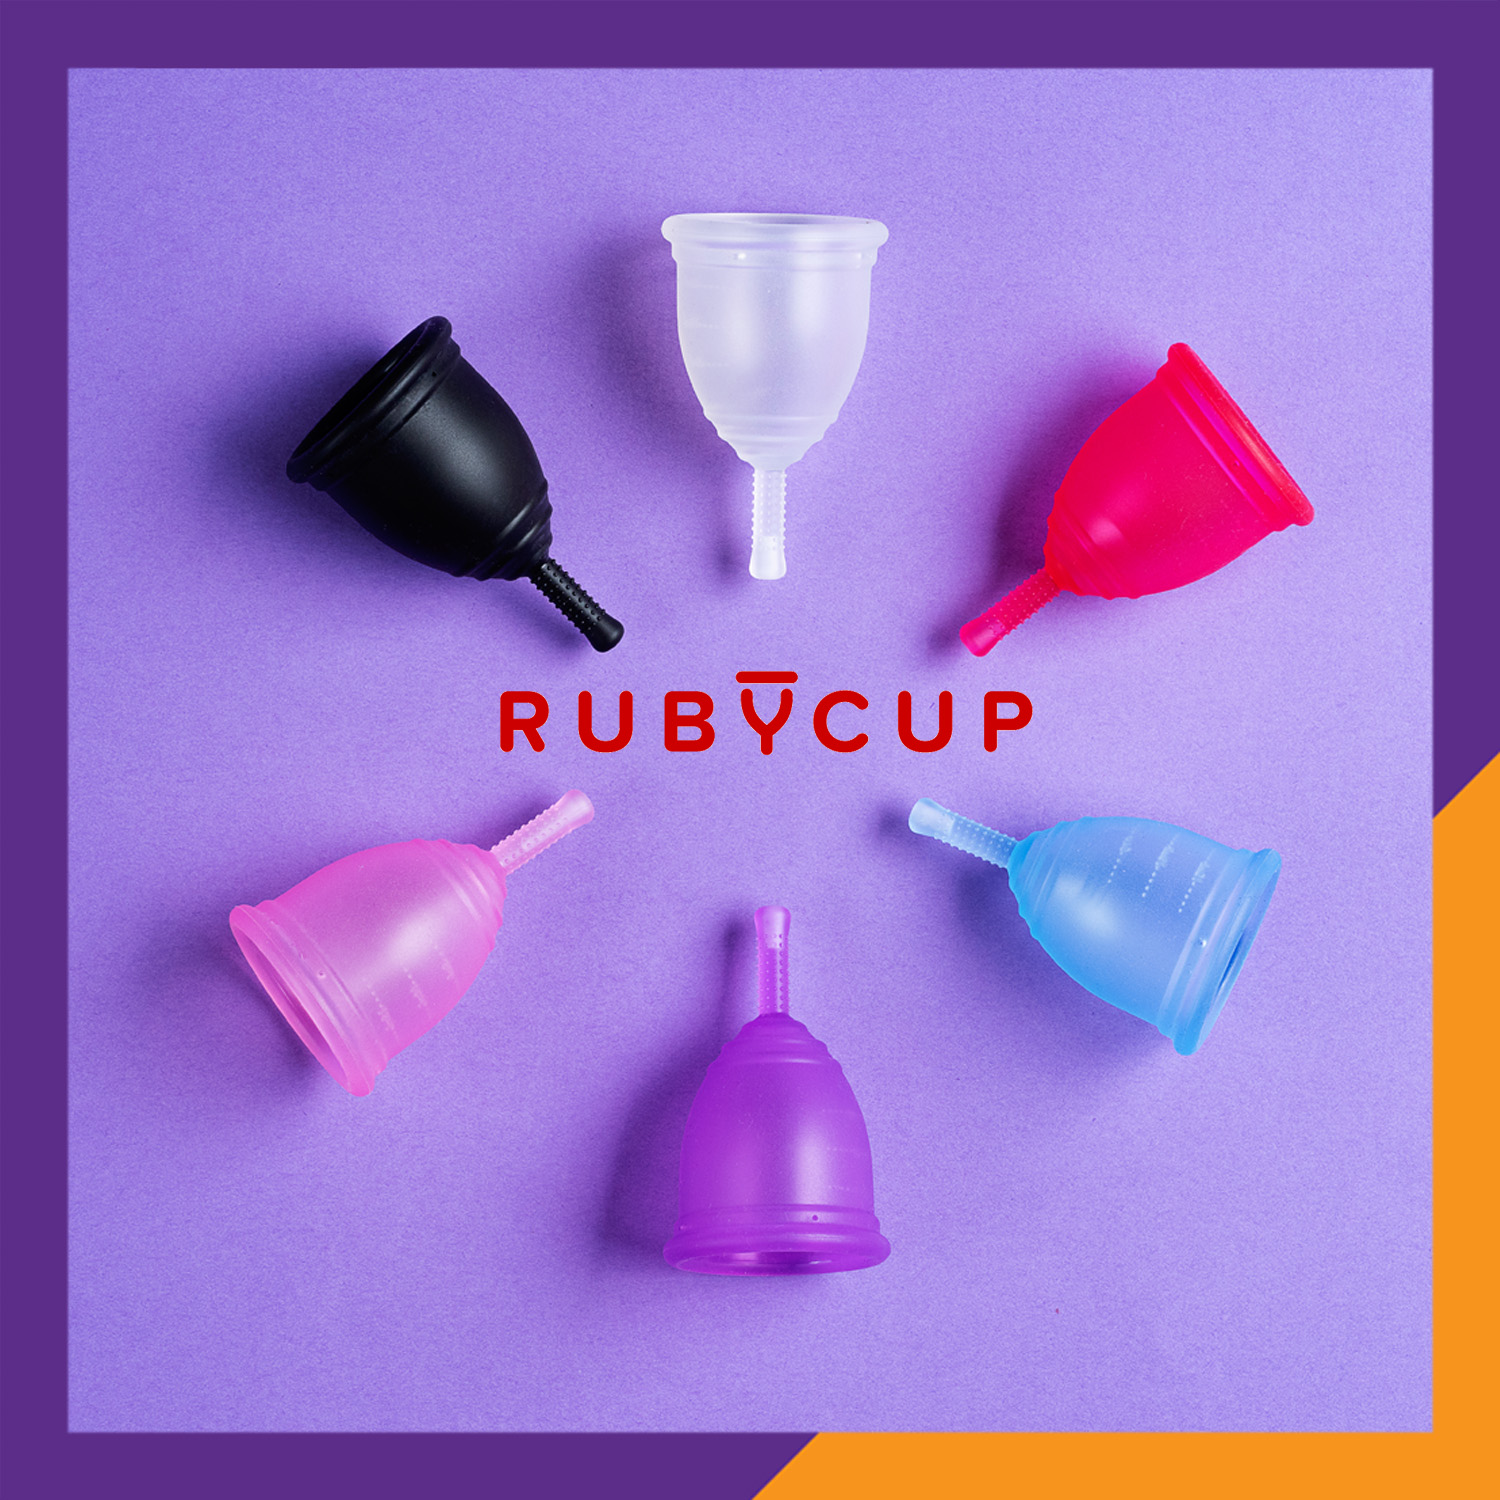 Cốc Nguyệt San Ruby Cup Anh Màu Hồng Size M 34ml - Độ Mềm Phù Hợp Phụ Nữ Việt - Vật liệu 100% Sillicon Y Tế Đạt Tiêu Chuẩn FDA – Hàng Chính Hãng Thương Hiệu Được Yêu Thích Tại Anh Và Hơn 36 Quốc Gia - Ruby Cup Pink M